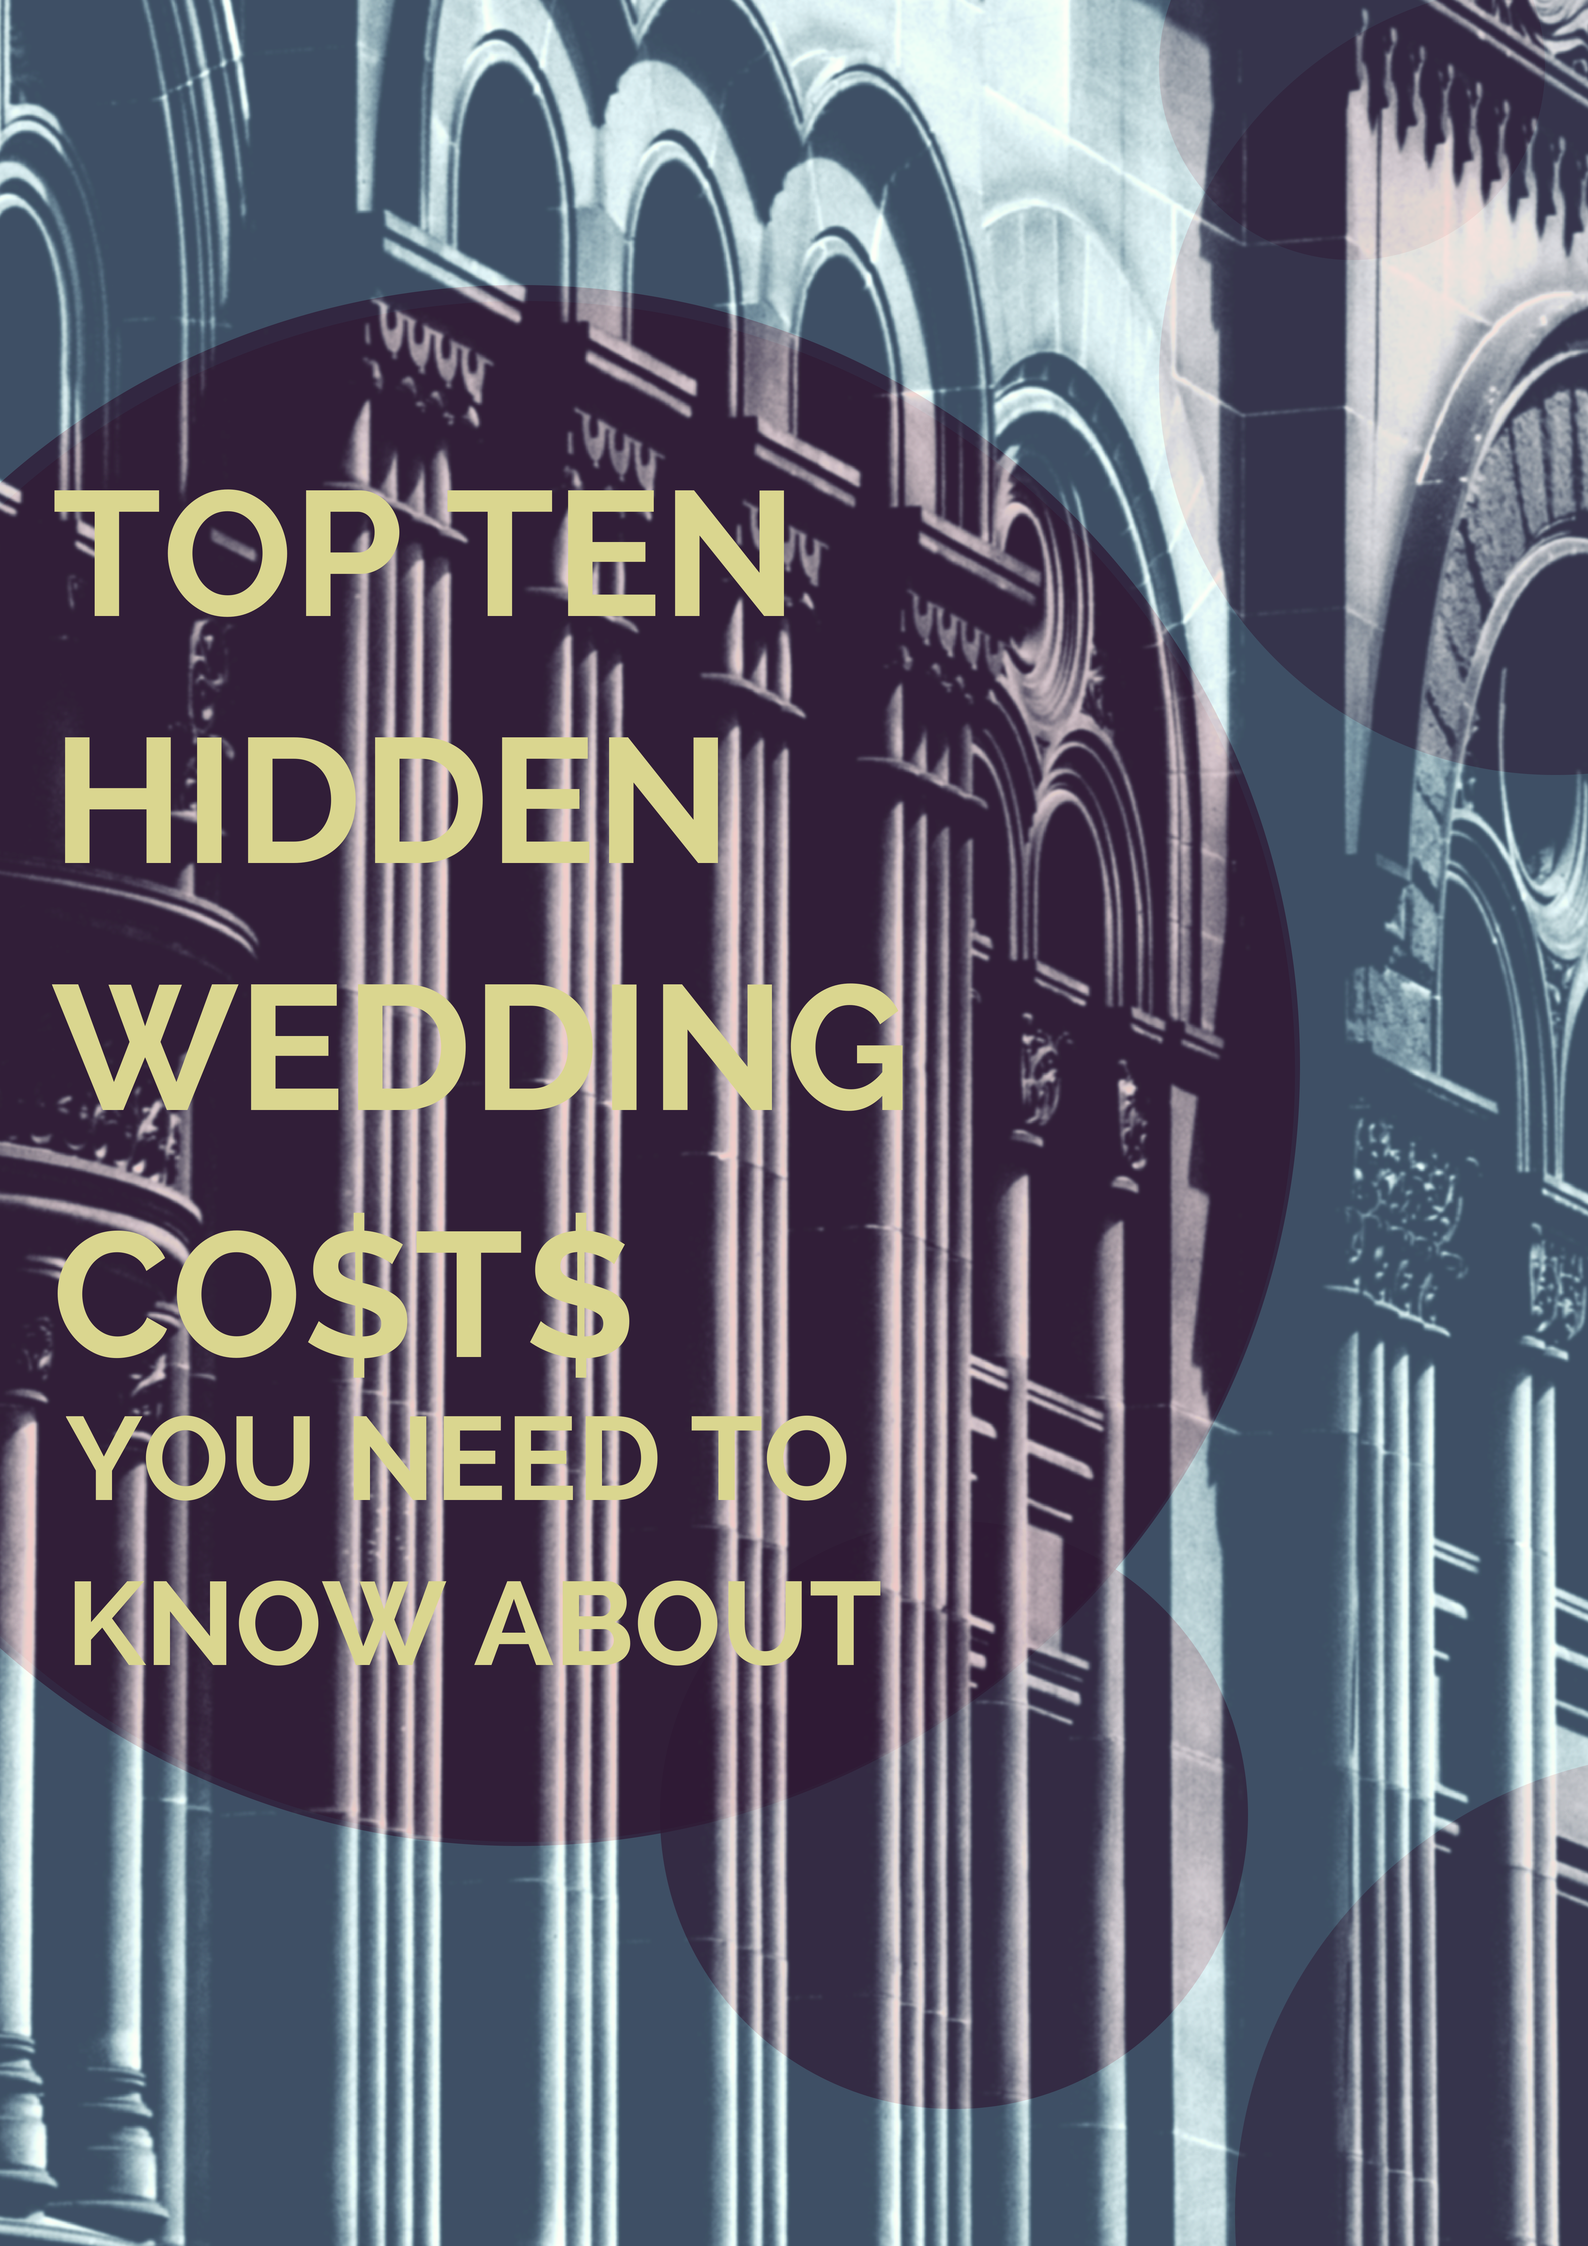 Top hidden wedding costs